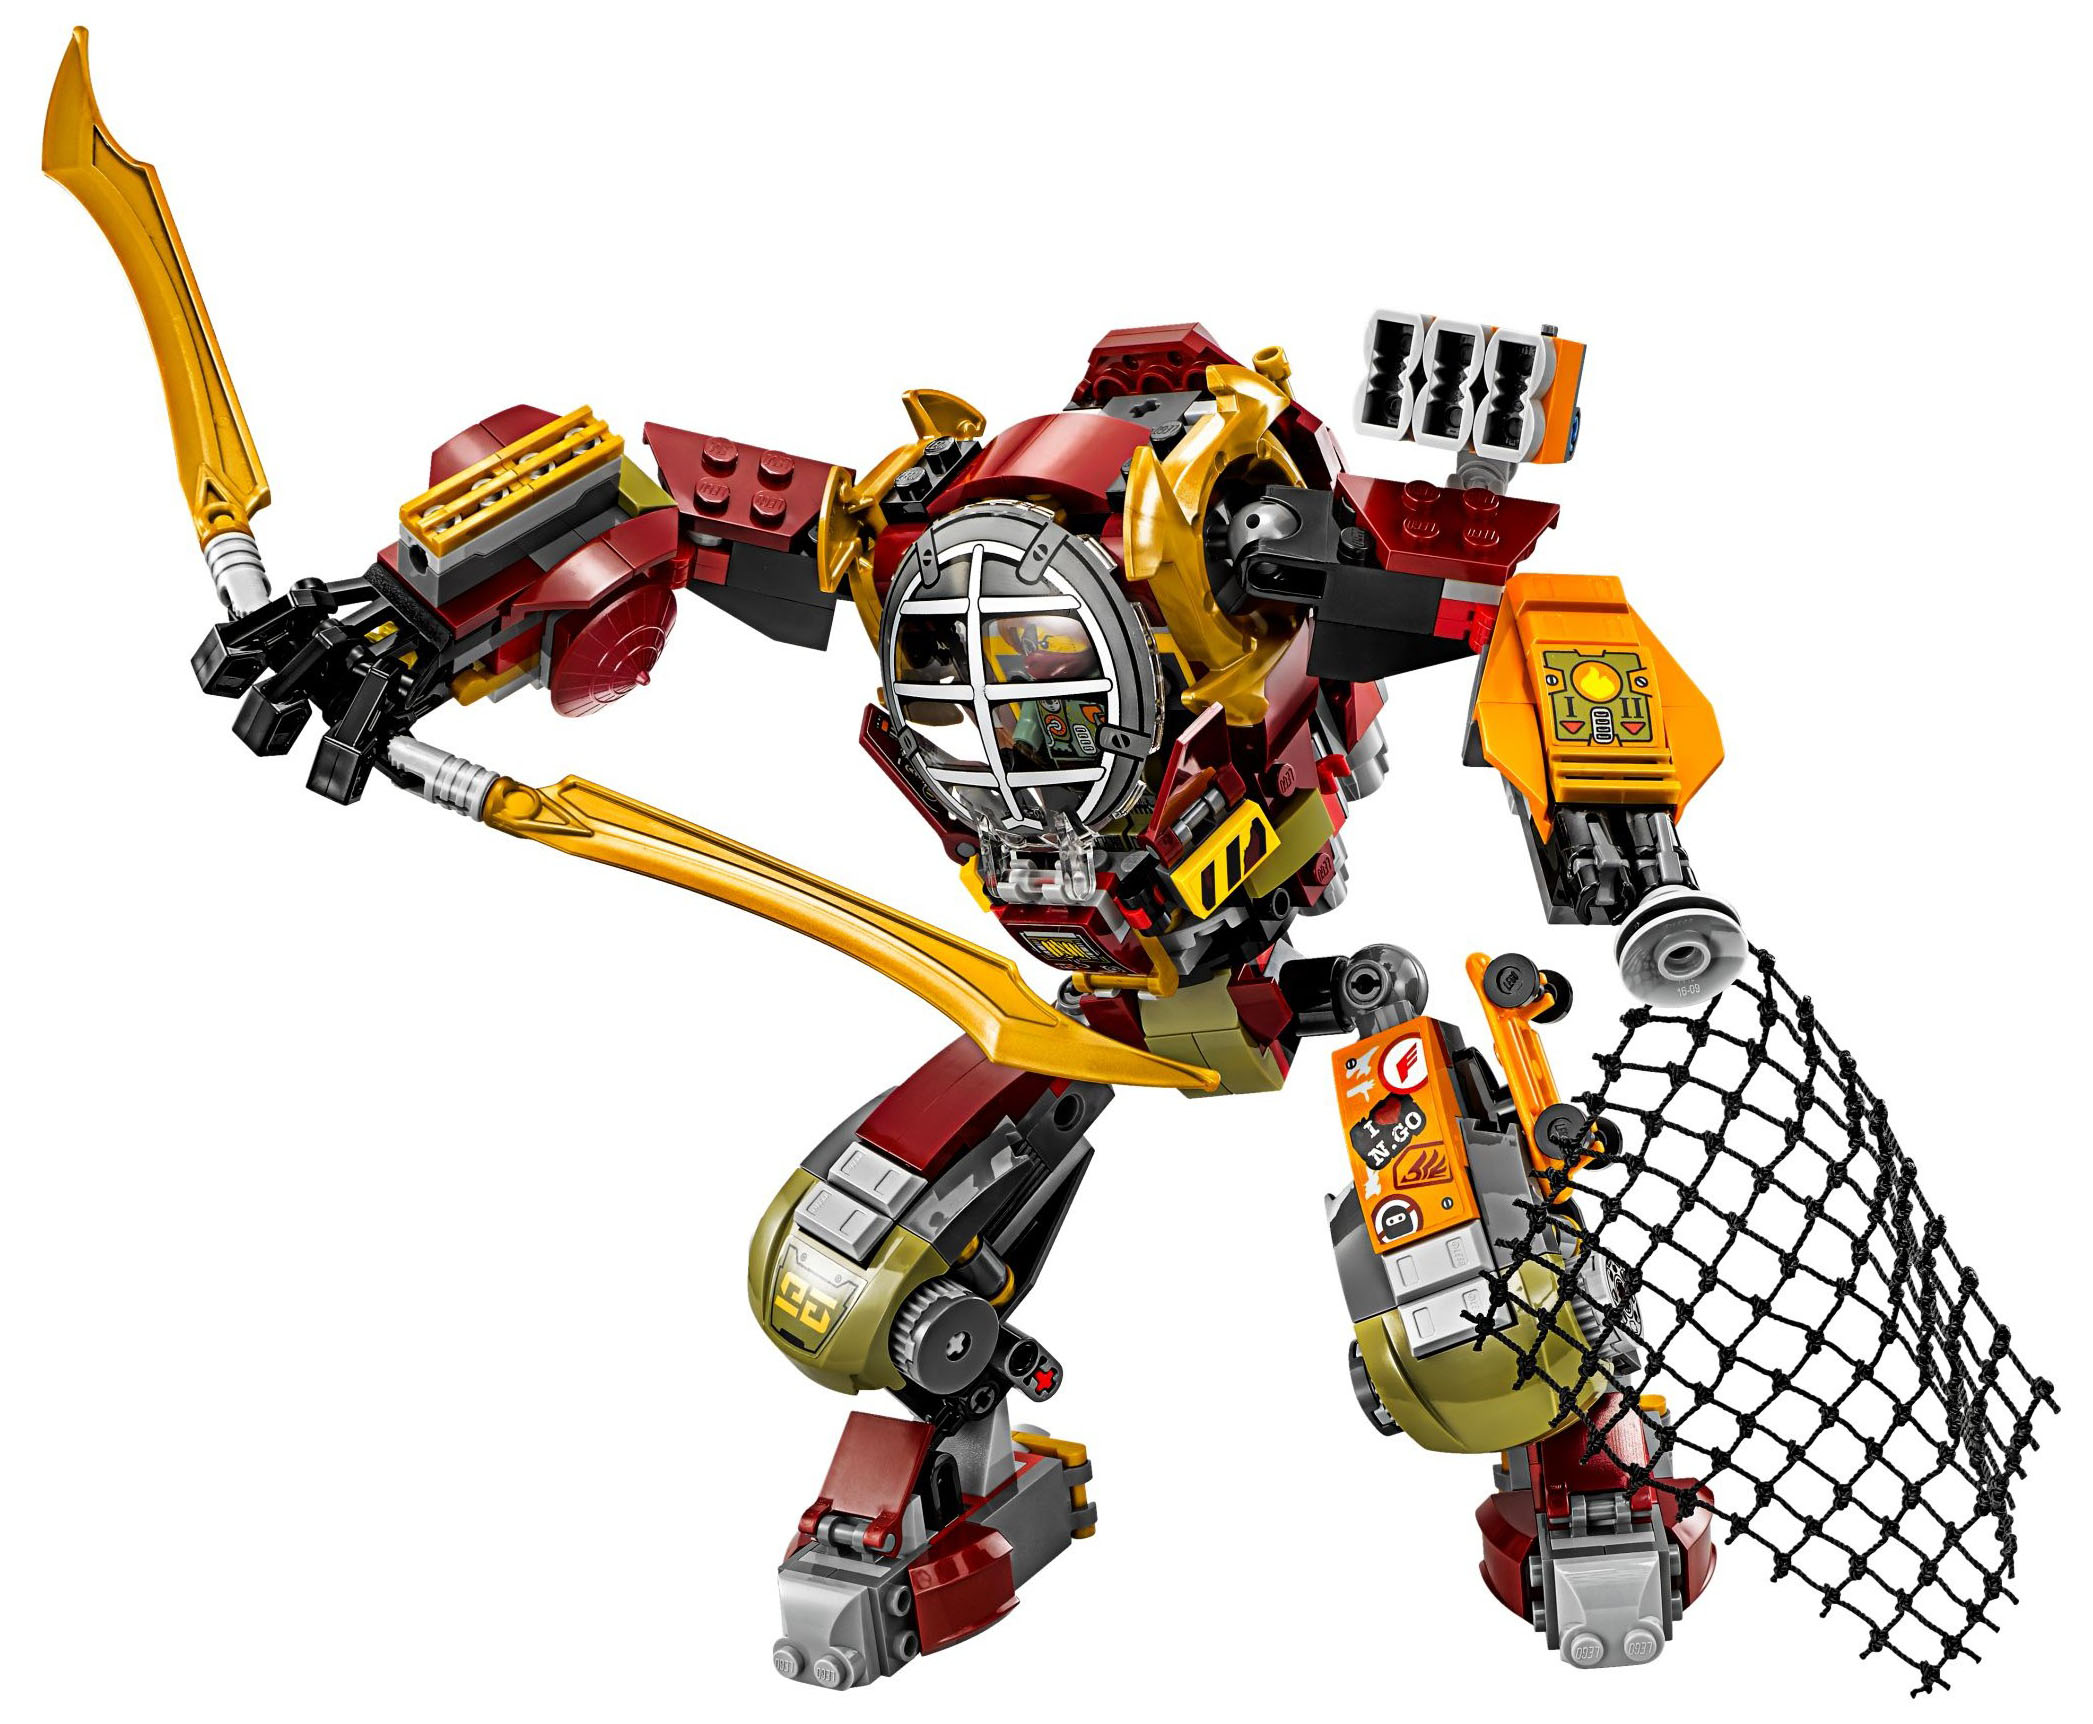 LEGO Ninjago 70592 pas cher - Le robot de Ronin